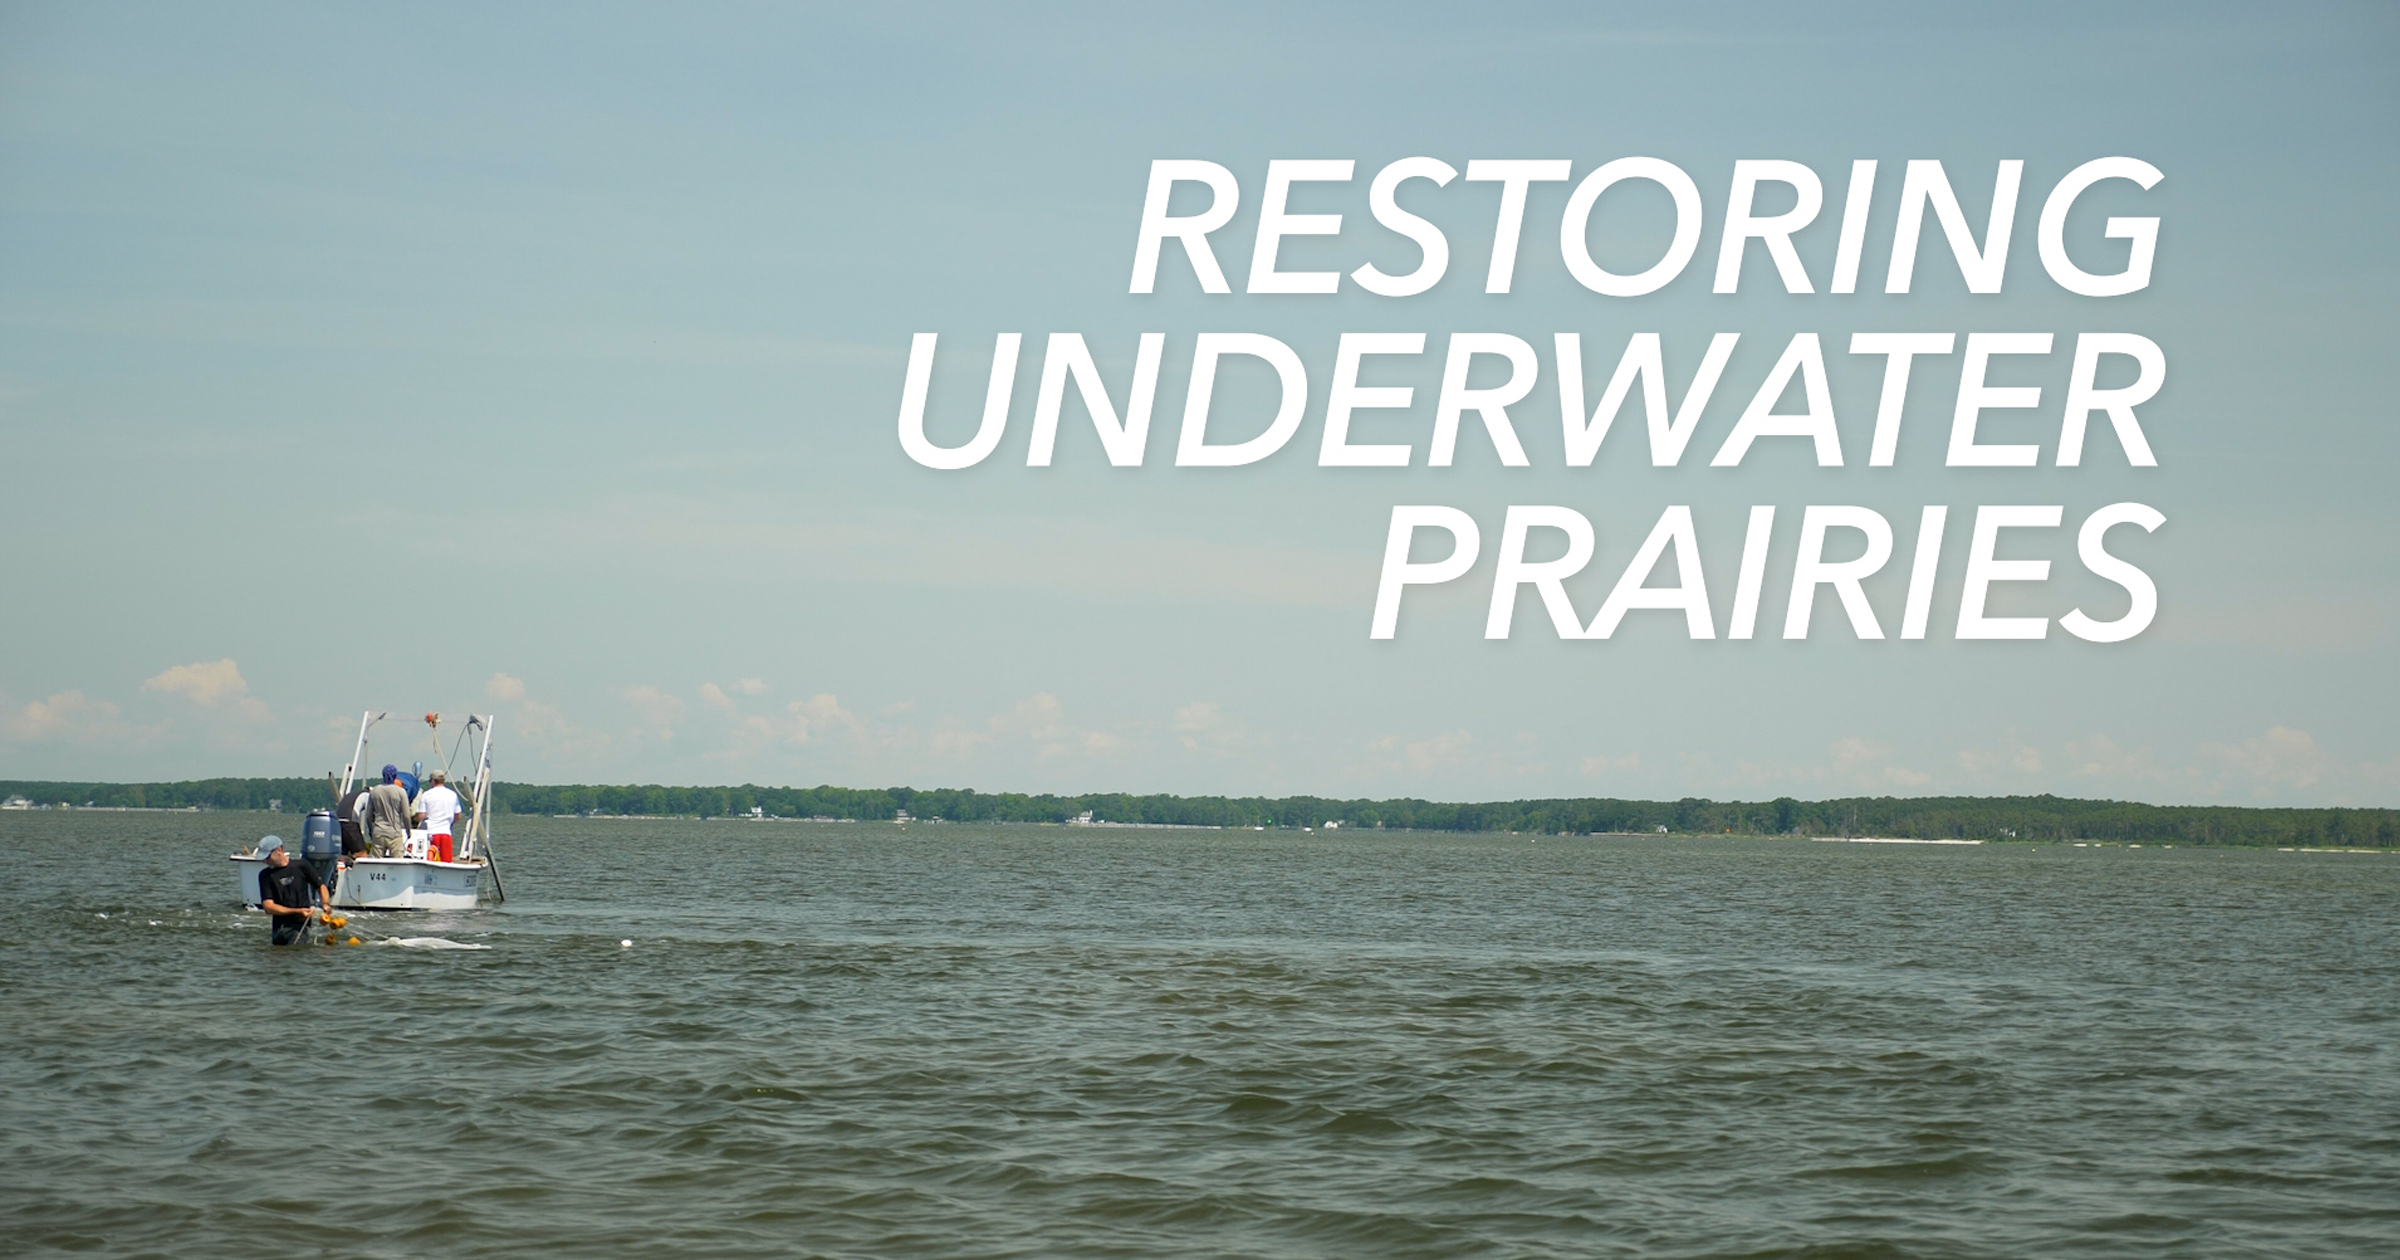 Restoring Underwater Prairies